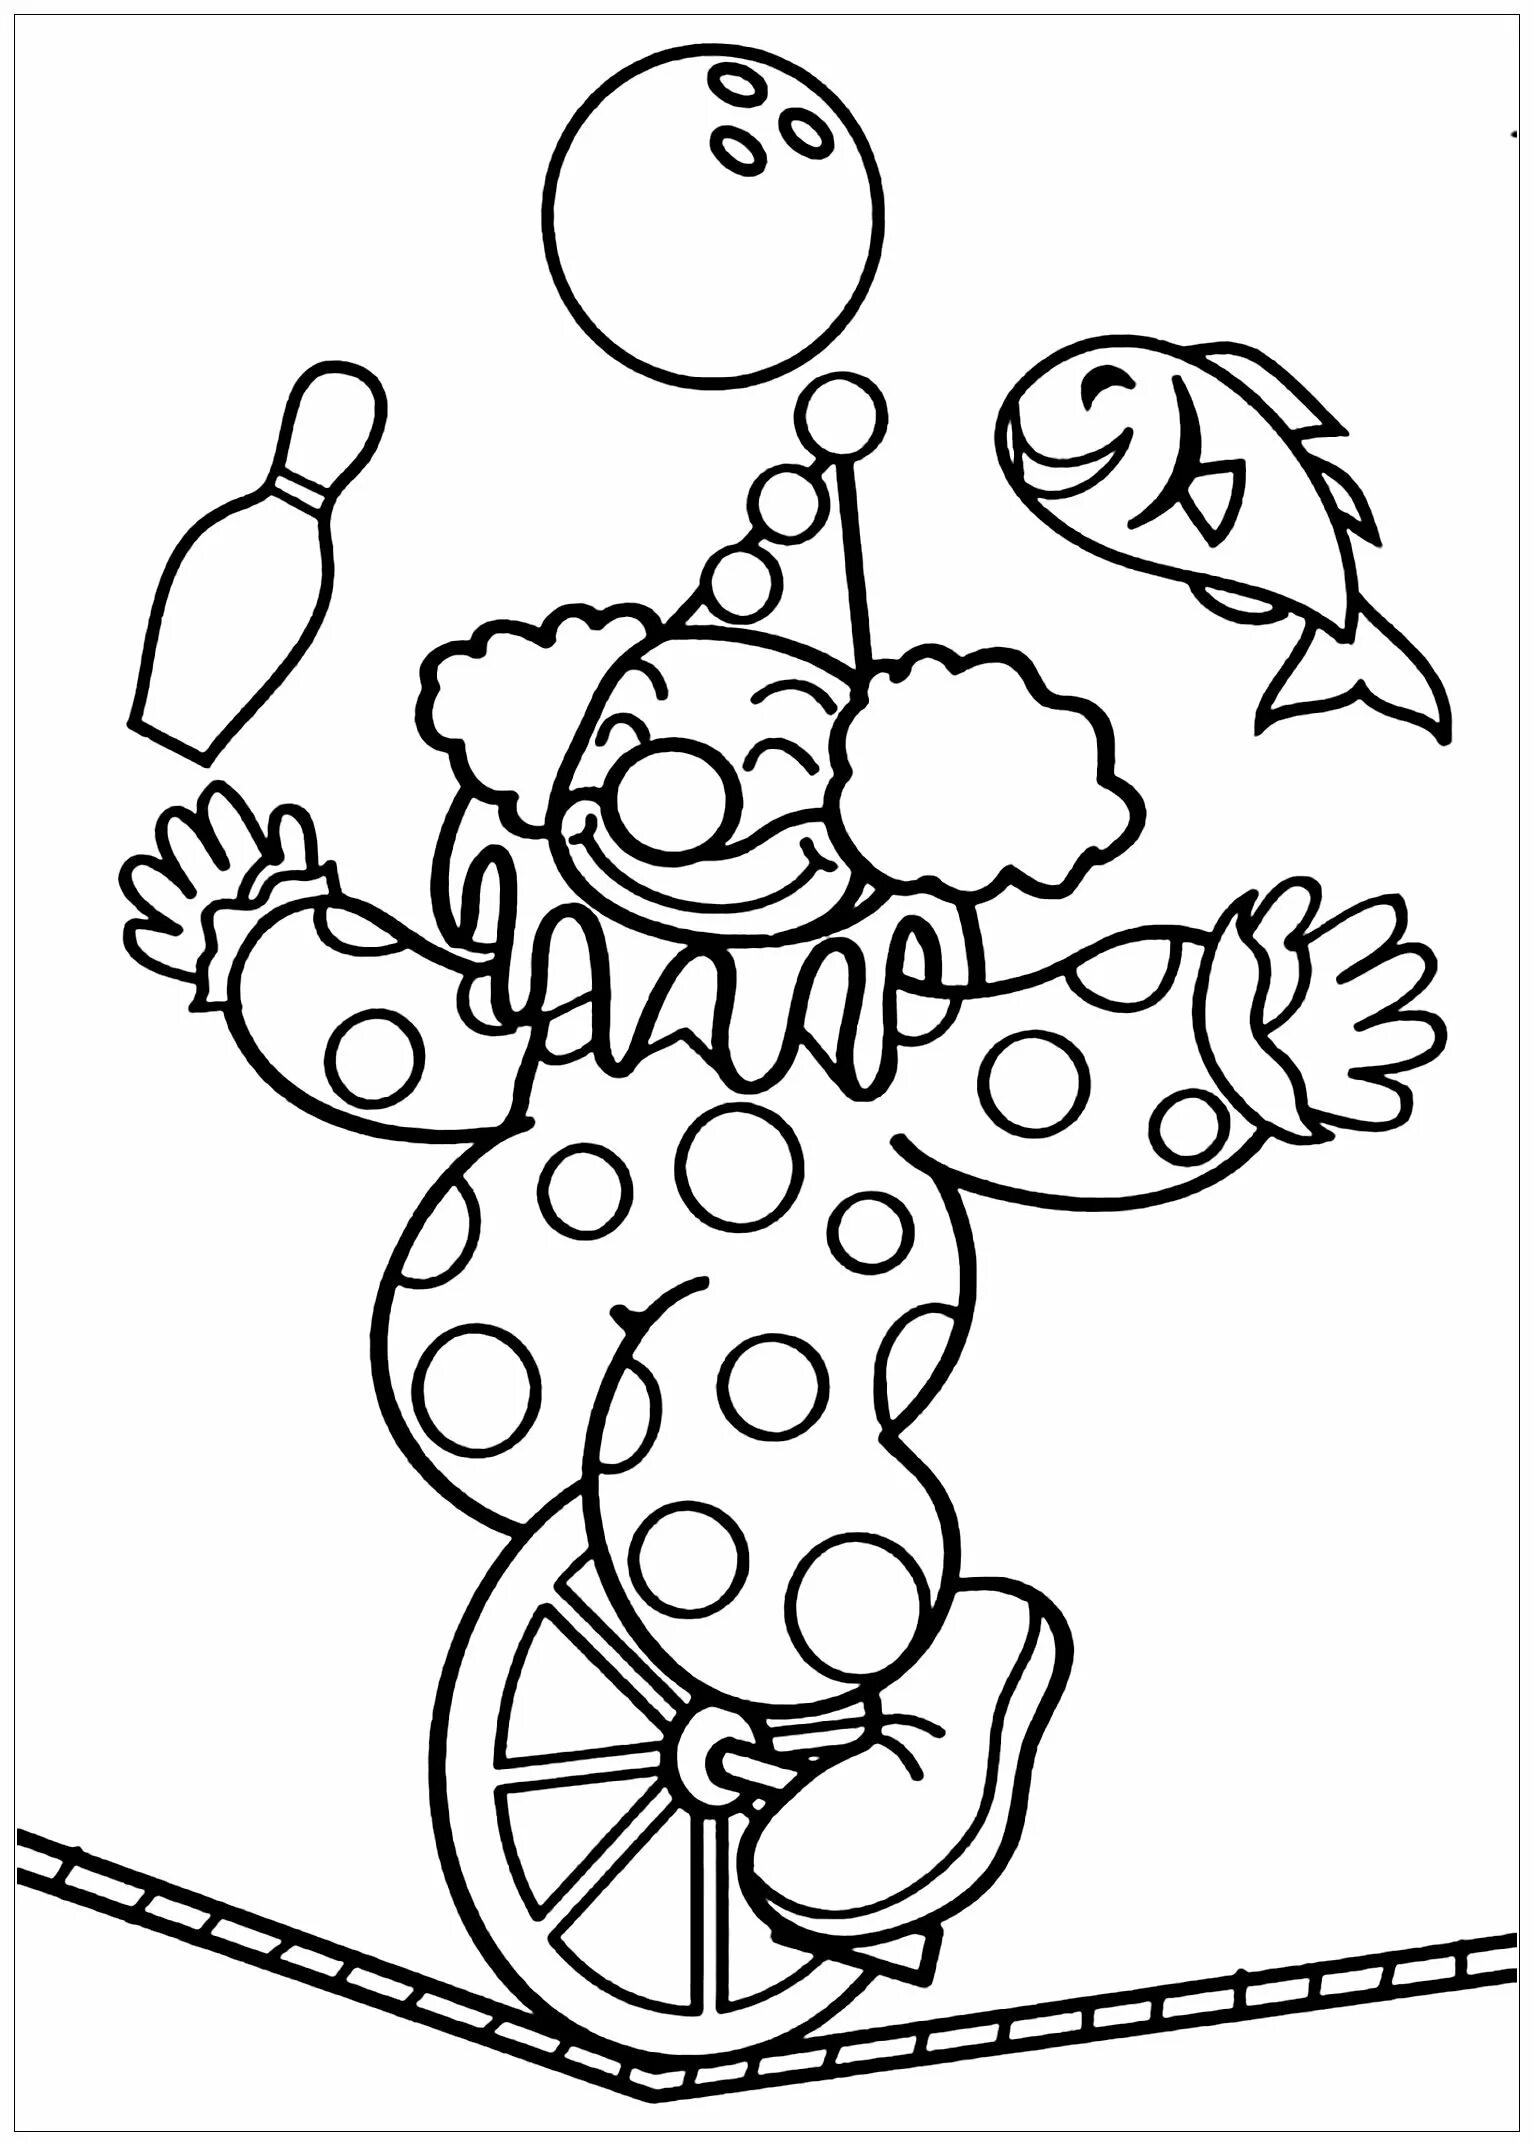 Клоуны раскраска для детей 5 лет. Клоун раскраска. Клоун раскраска для детей. Раскраска клоун с шариками. Клоун для раскрашивания детям.